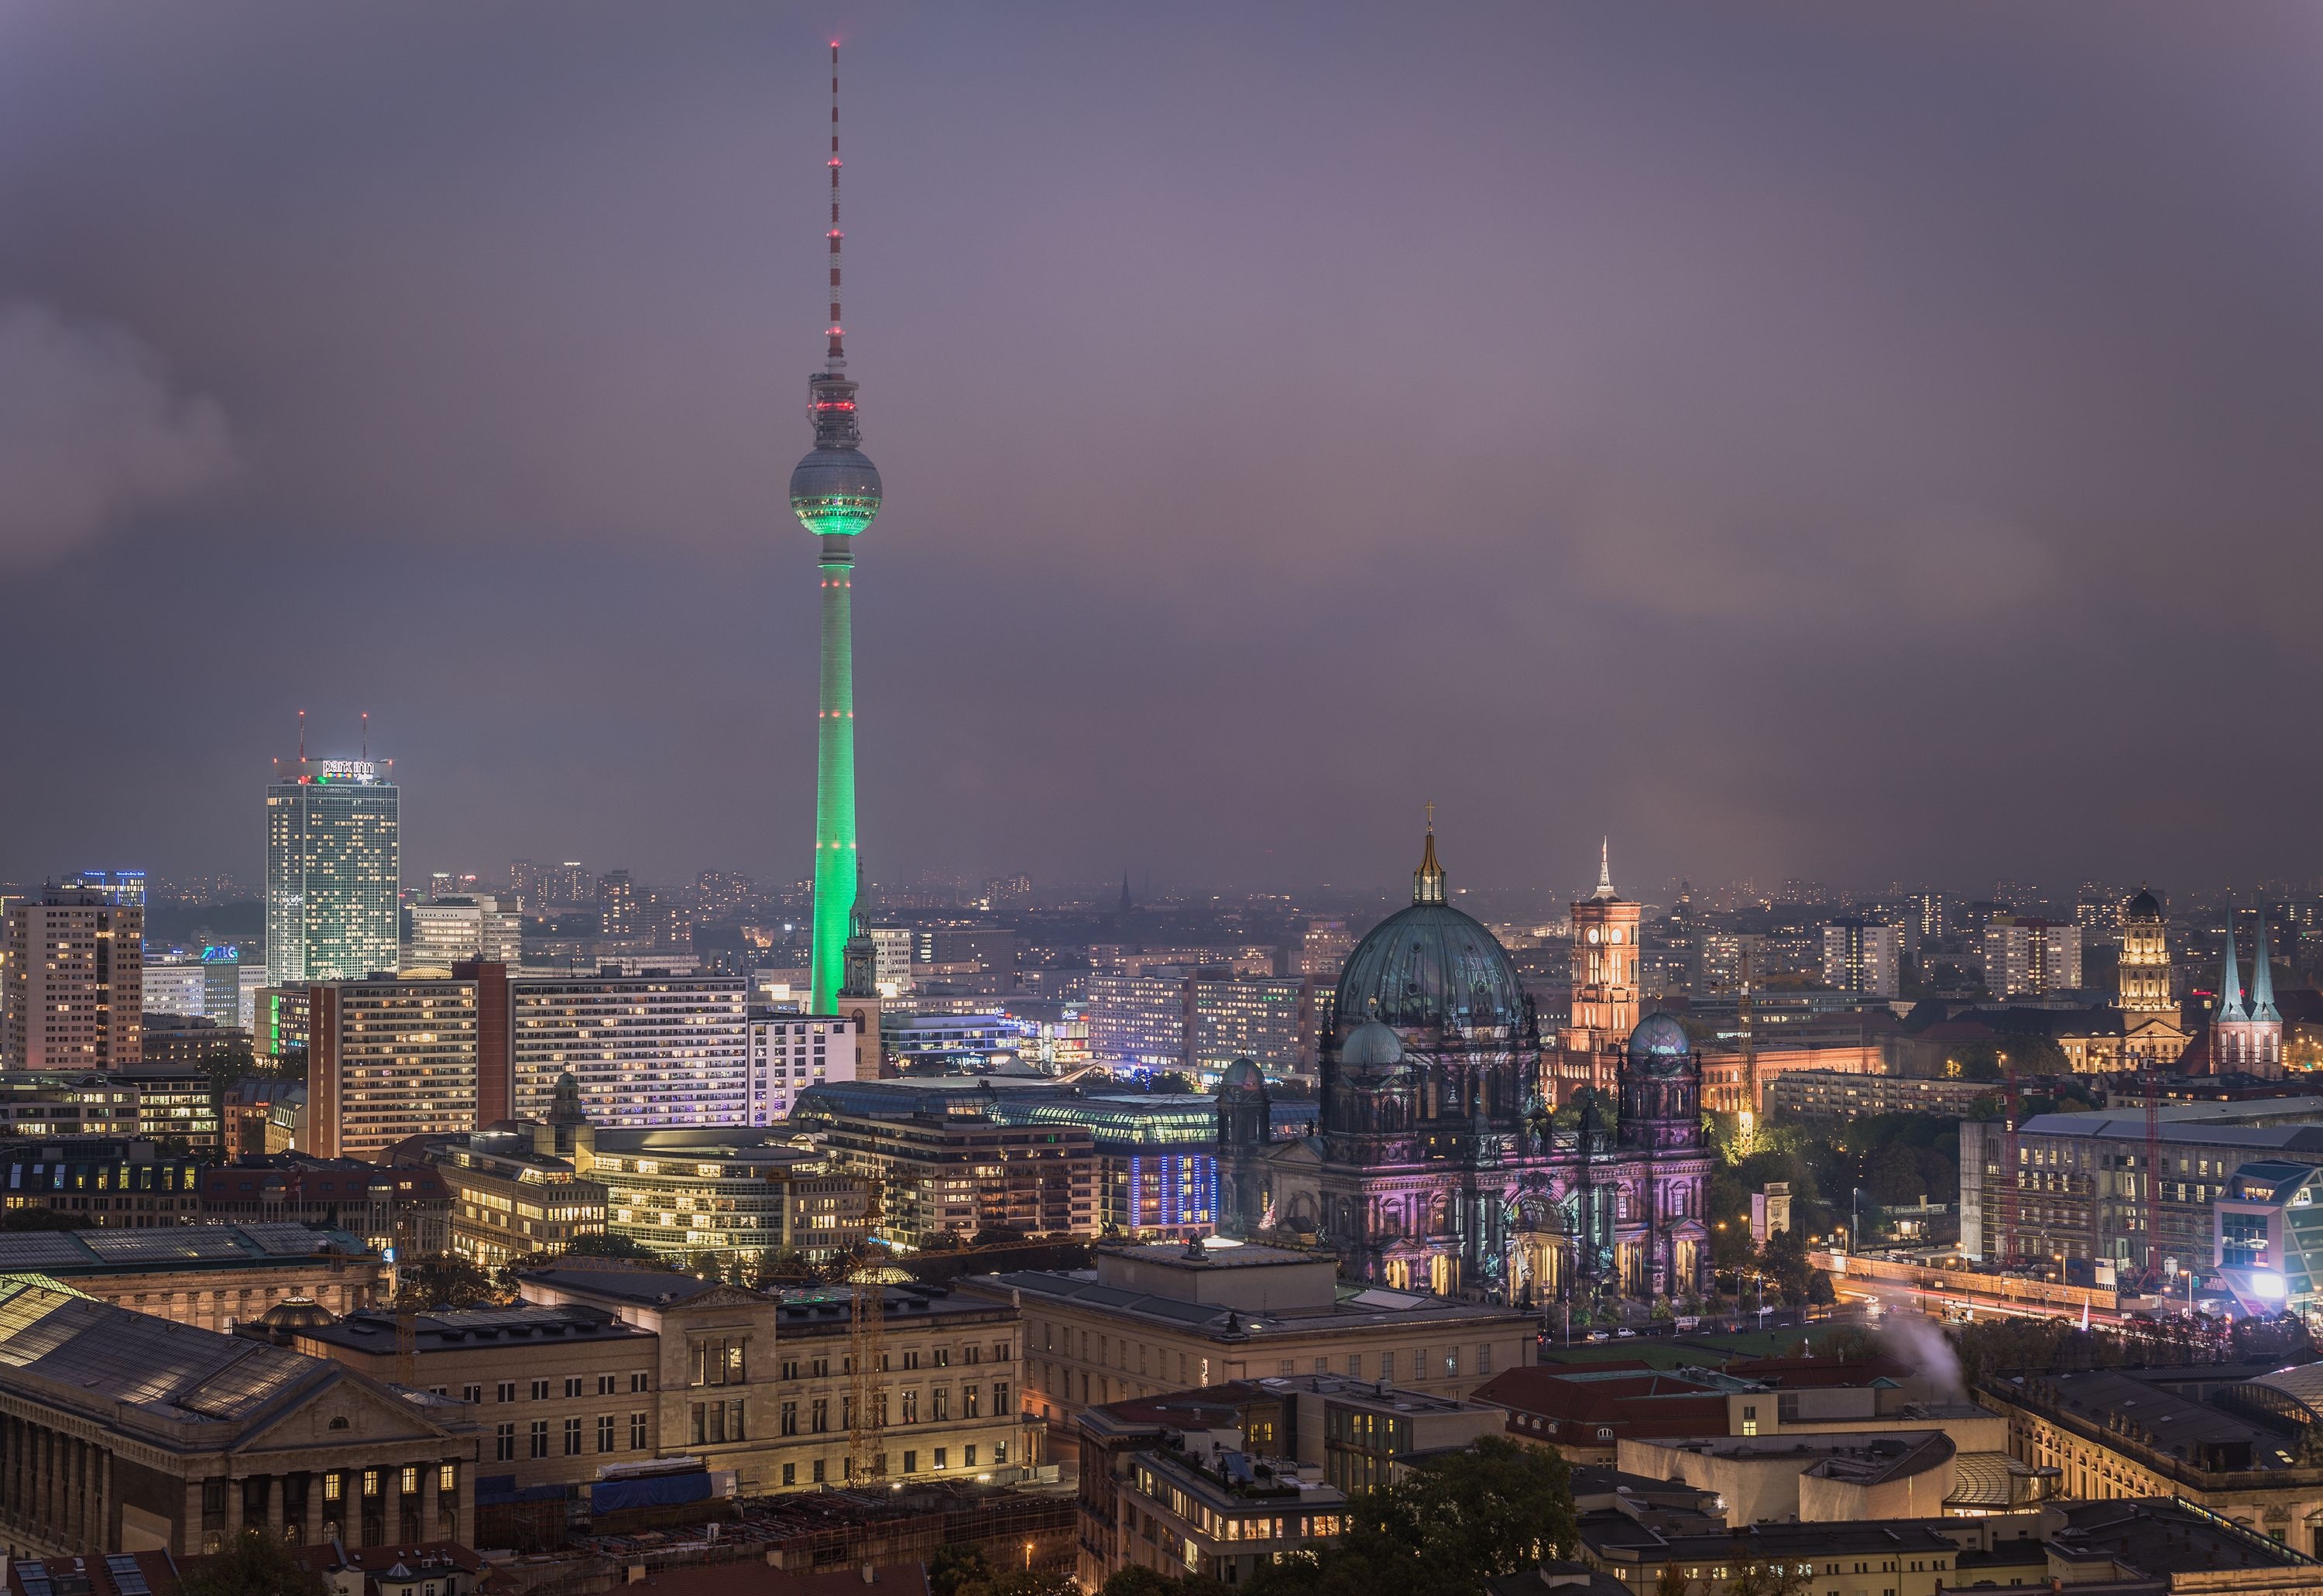 Berlin HD, Wallpapers, Urban landscapes, Vibrant city life, 3000x2070 HD Desktop